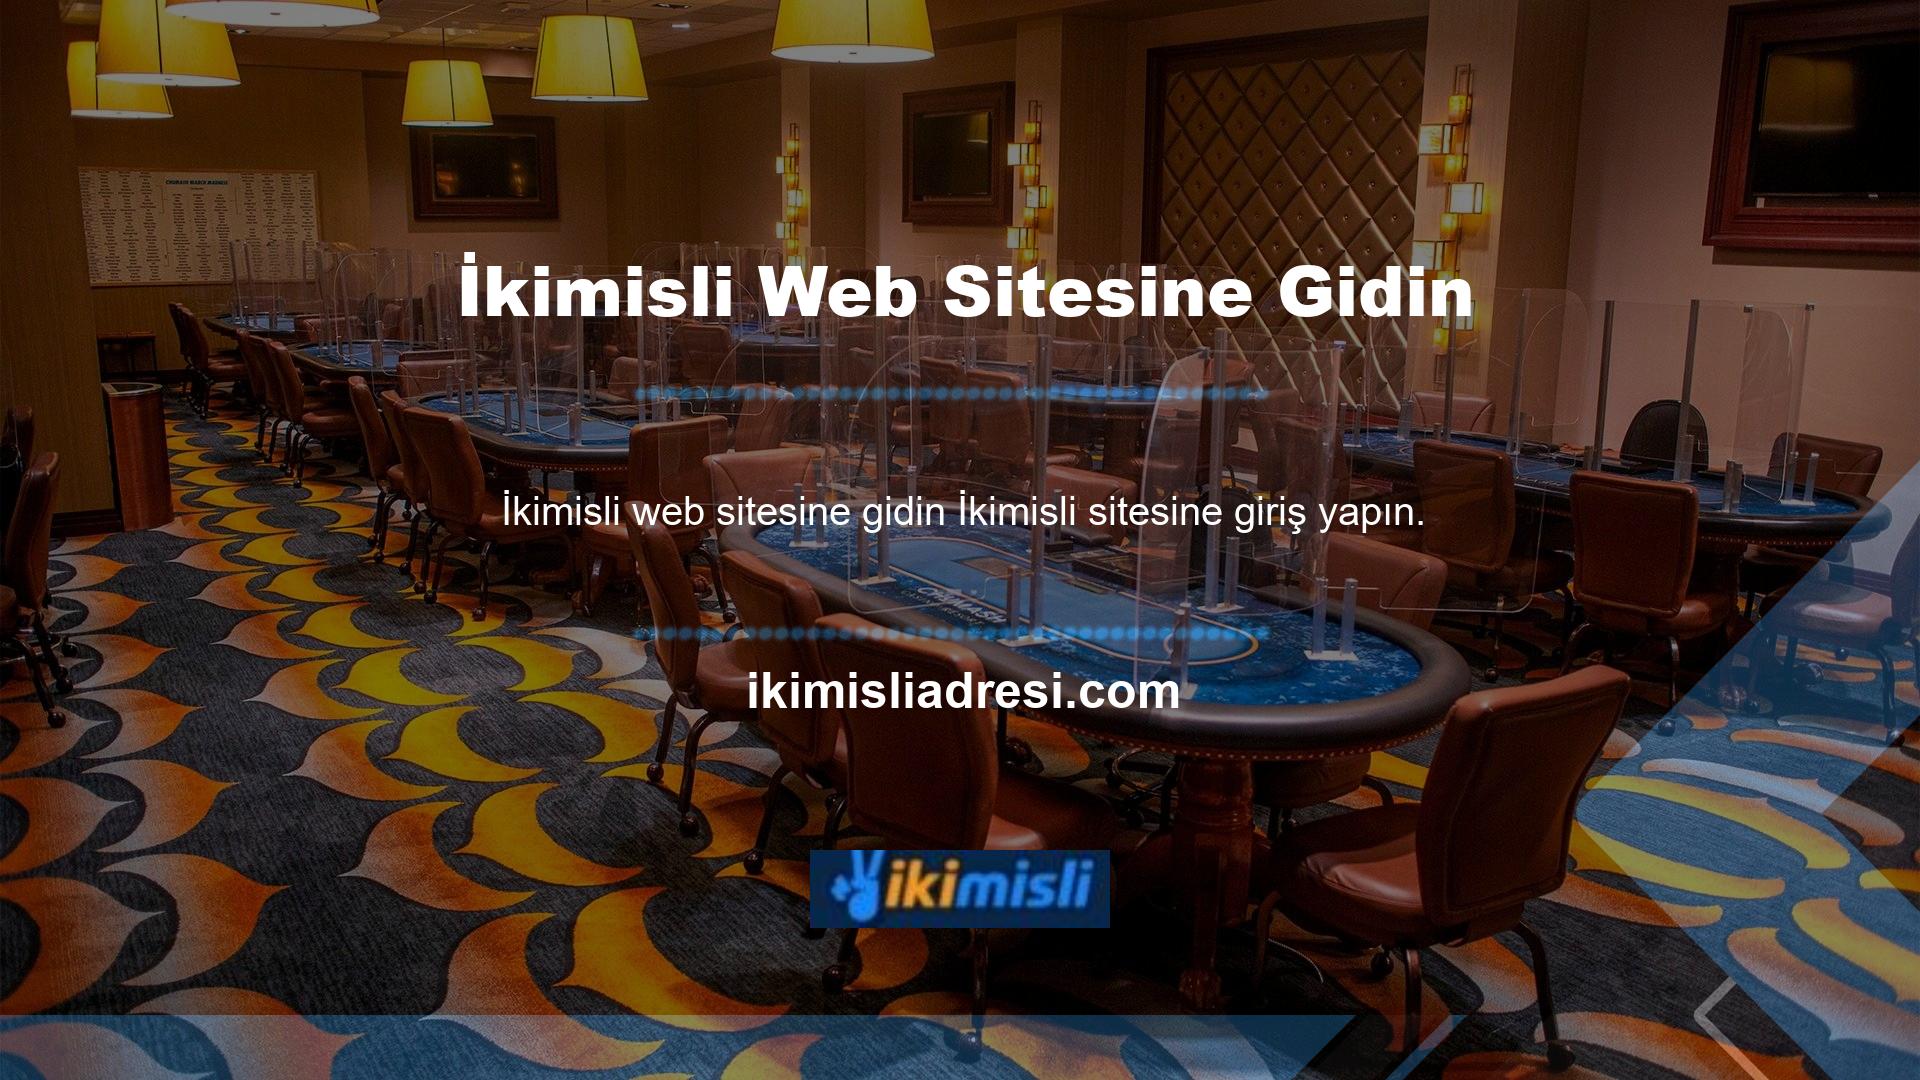 Bu site, Türkiye'de en çok ziyaret edilen casino sitelerinden biri olan İkimisli güncel adresi hakkında kullanıcılara anlık bilgi sağlamak için oluşturulmuştur